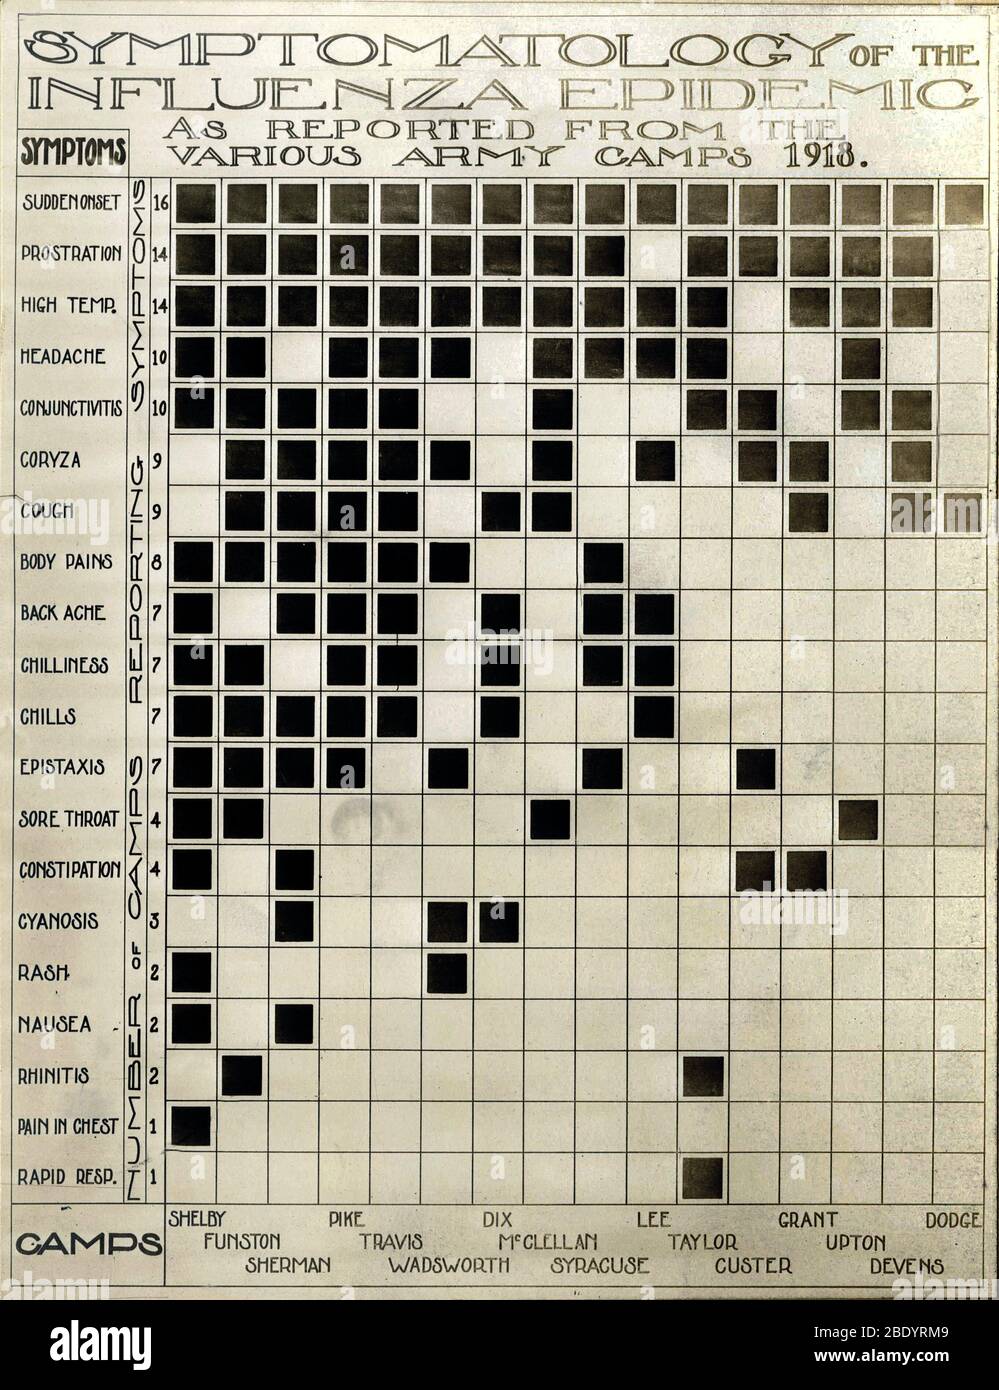 Flu symptoms chart, USA, 1918 Stock Photo